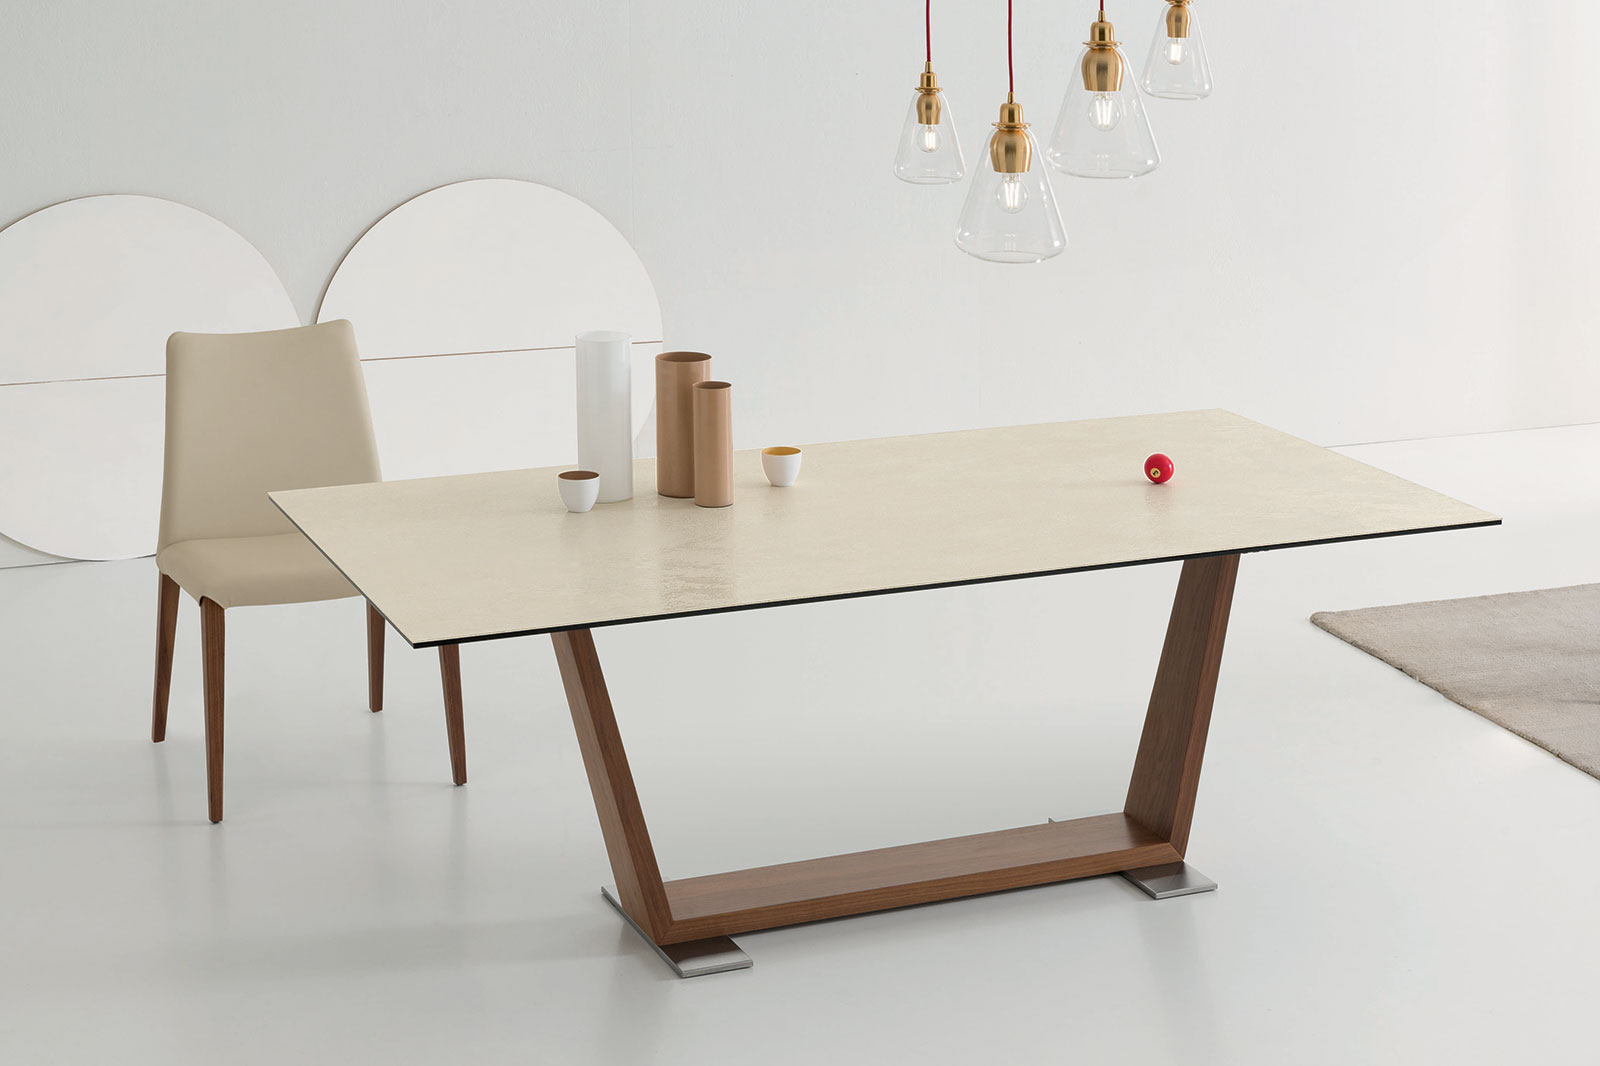 Doly est une table rectangulaire de salle à manger réalisée en bois et céramique. Découvrez notre collection de meubles italiens haut de gamme contemporaines